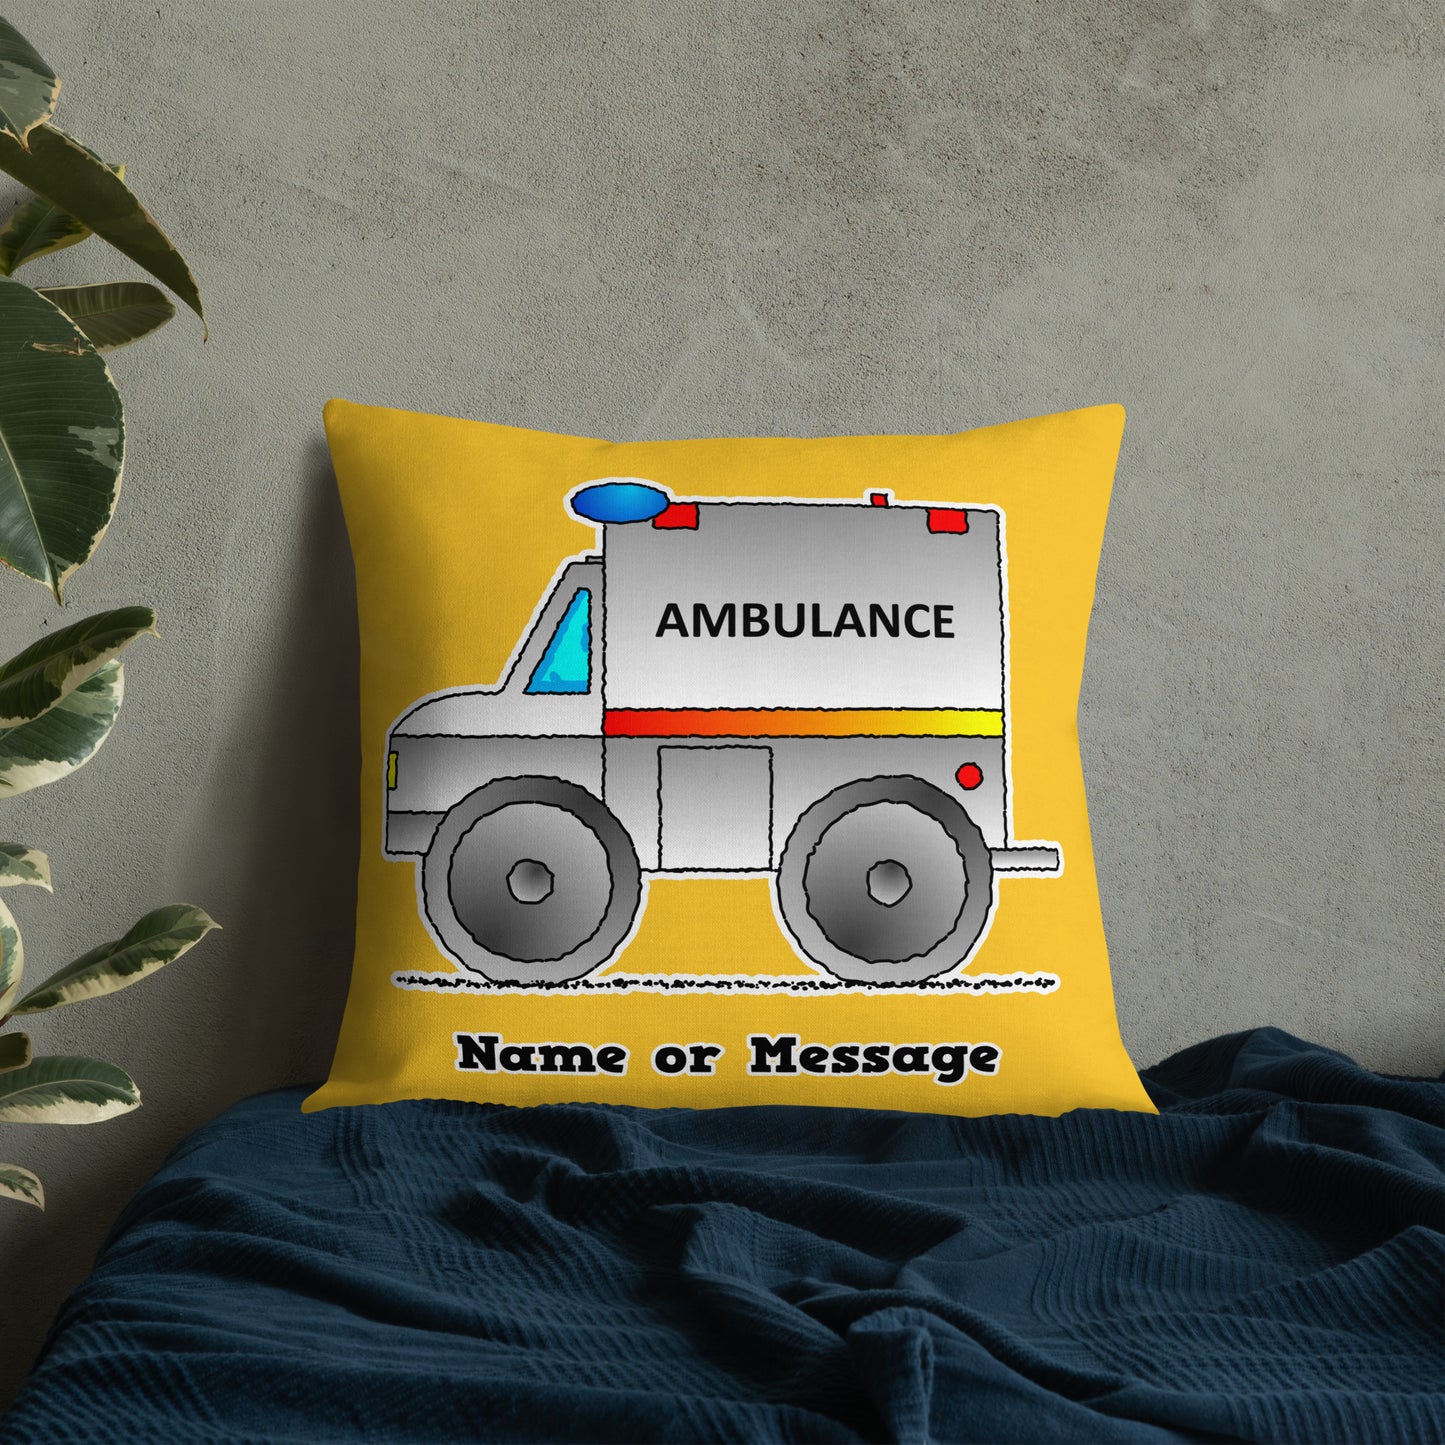 Ambulance Pillow. Custom Cushion Emergency Medical Vehicle Rescue P009